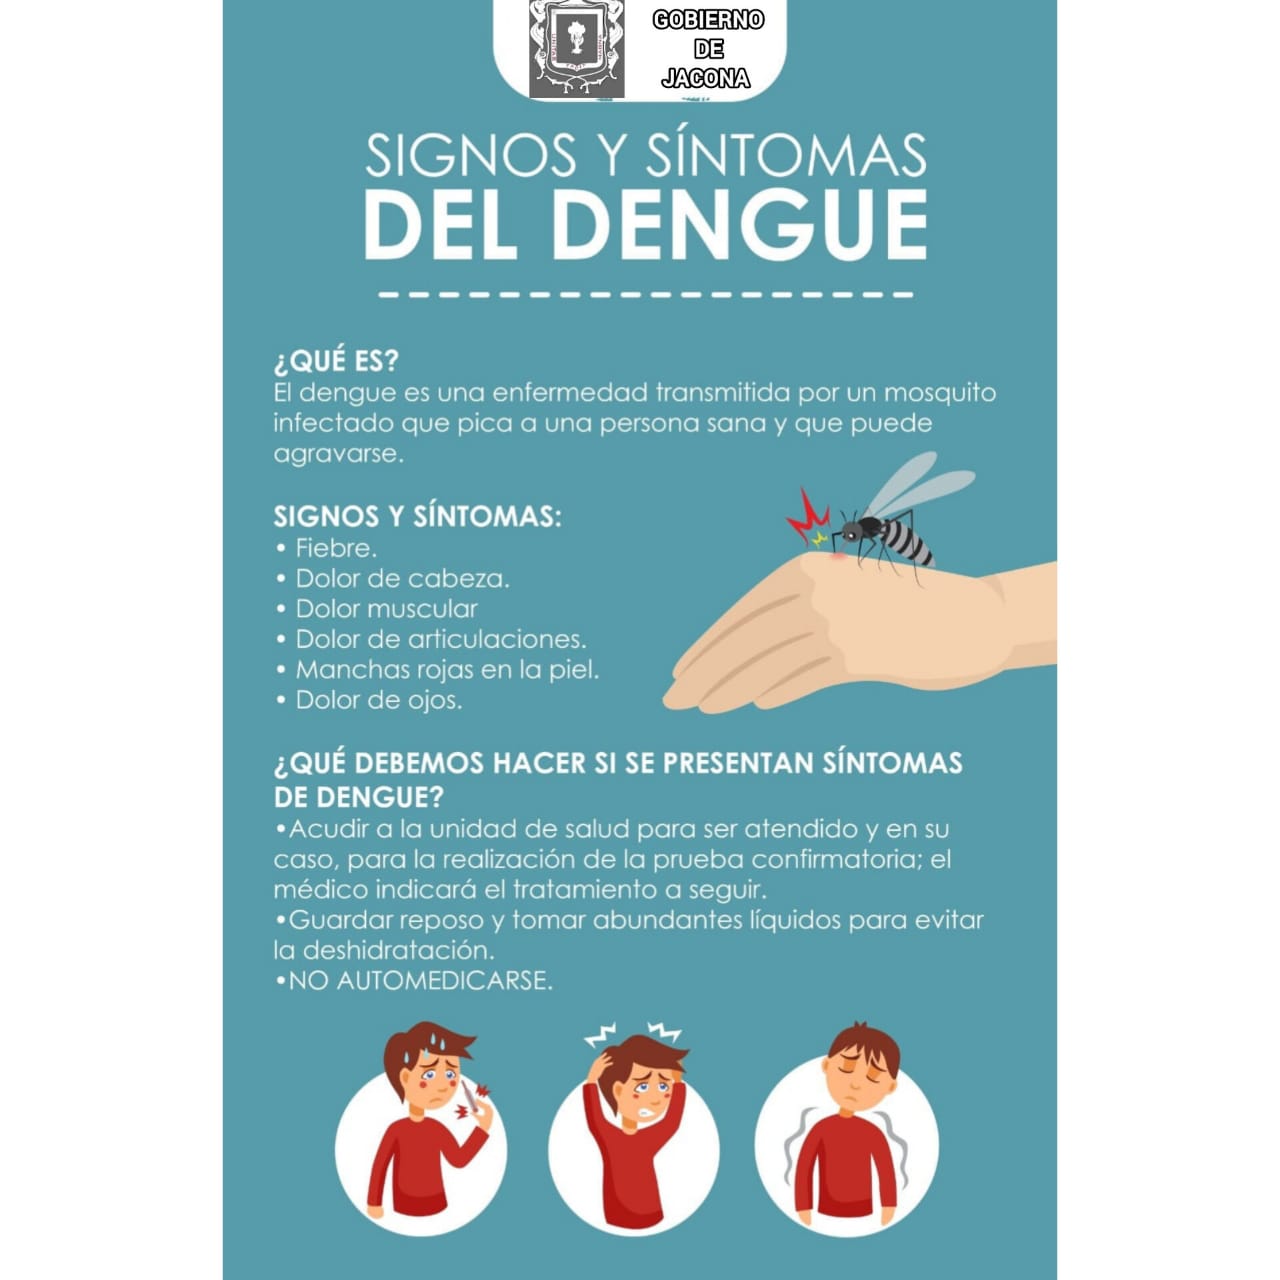 Invitan a la población a sumarse a las acciones contra el dengue